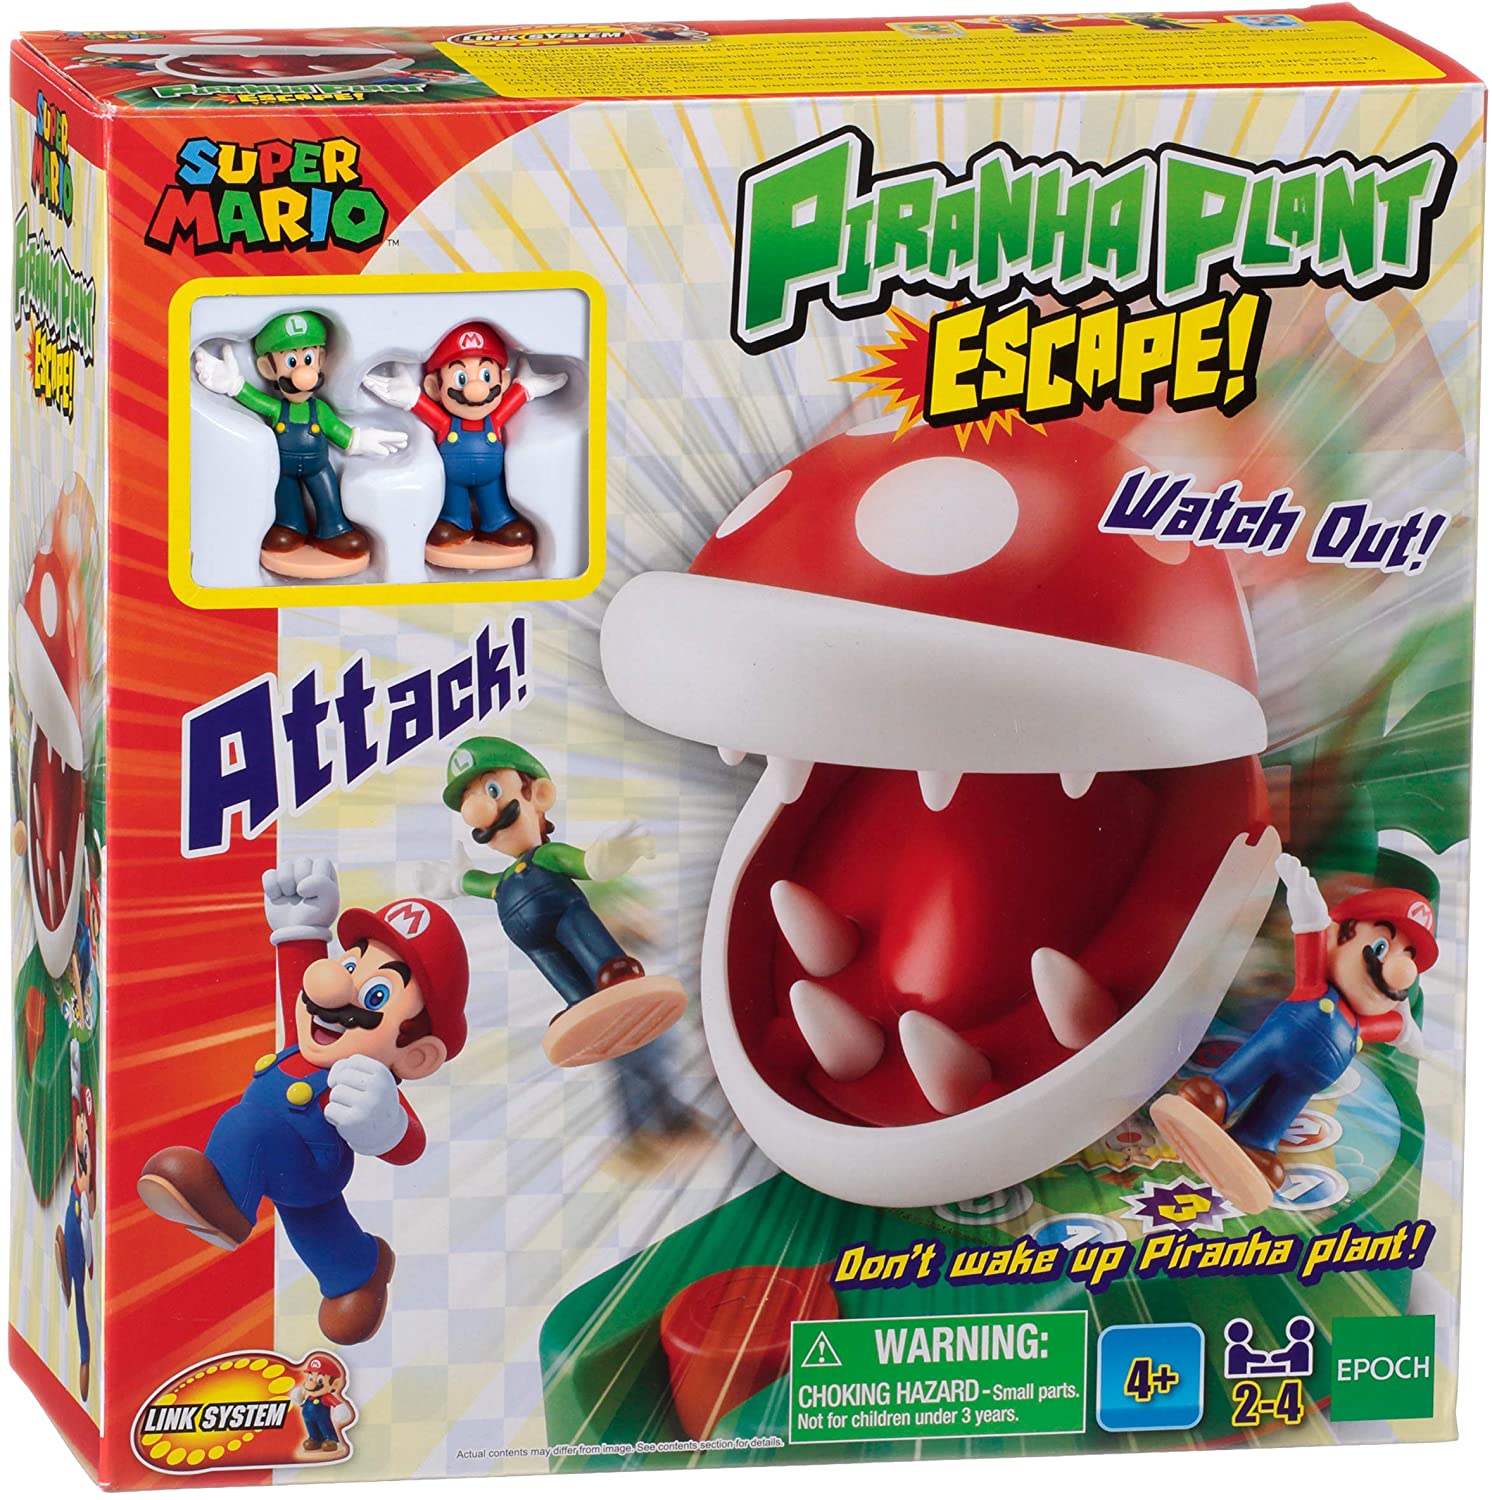 Super Mario Piranha Plant Escape 7357